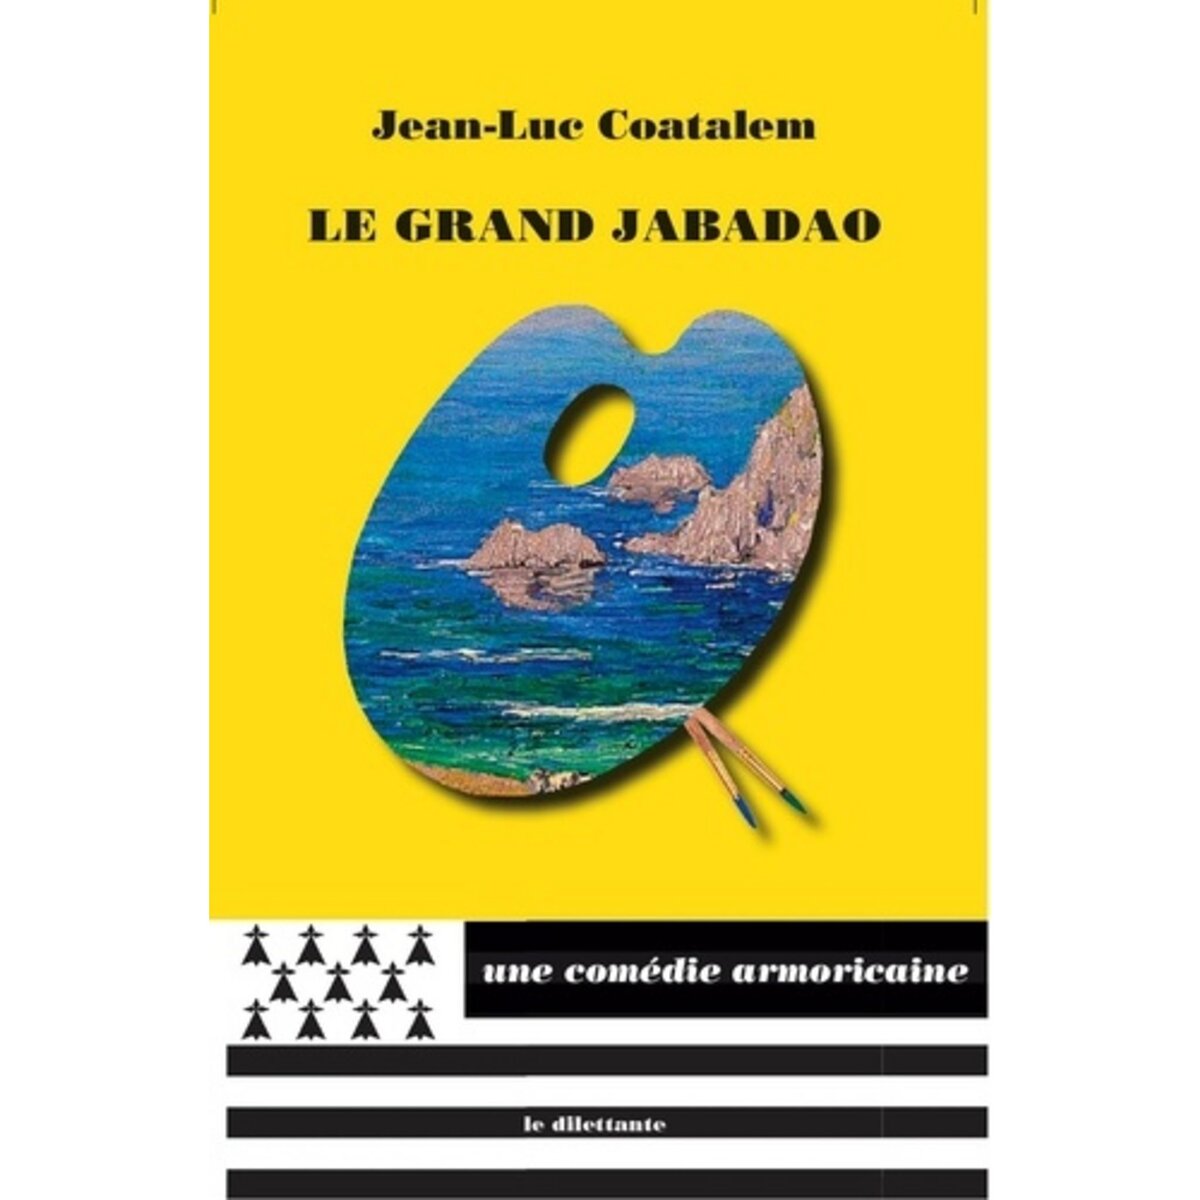  LE GRAND JABADAO, Coatalem Jean-Luc